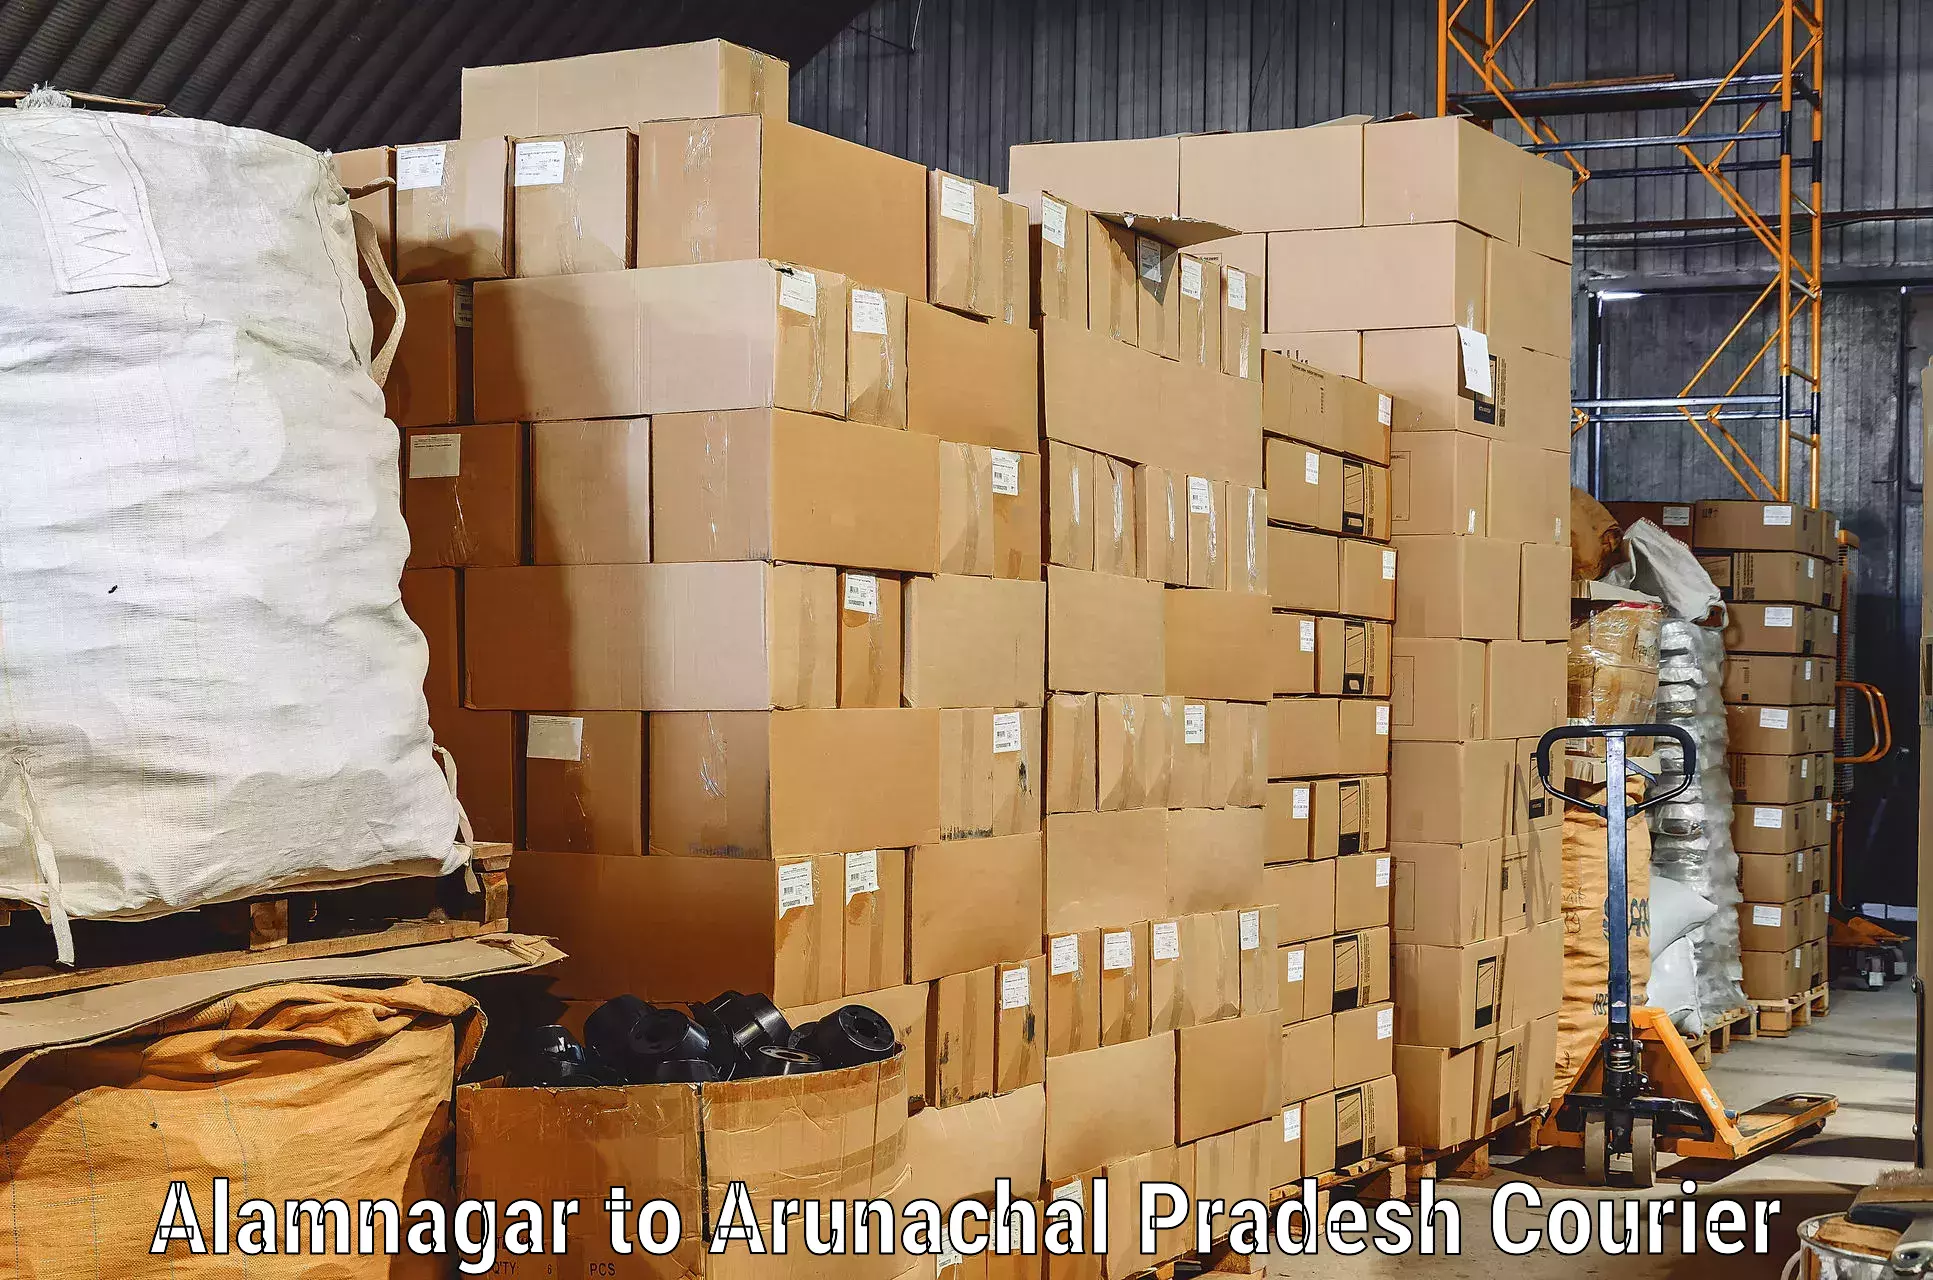 Reliable furniture transport in Alamnagar to Arunachal Pradesh